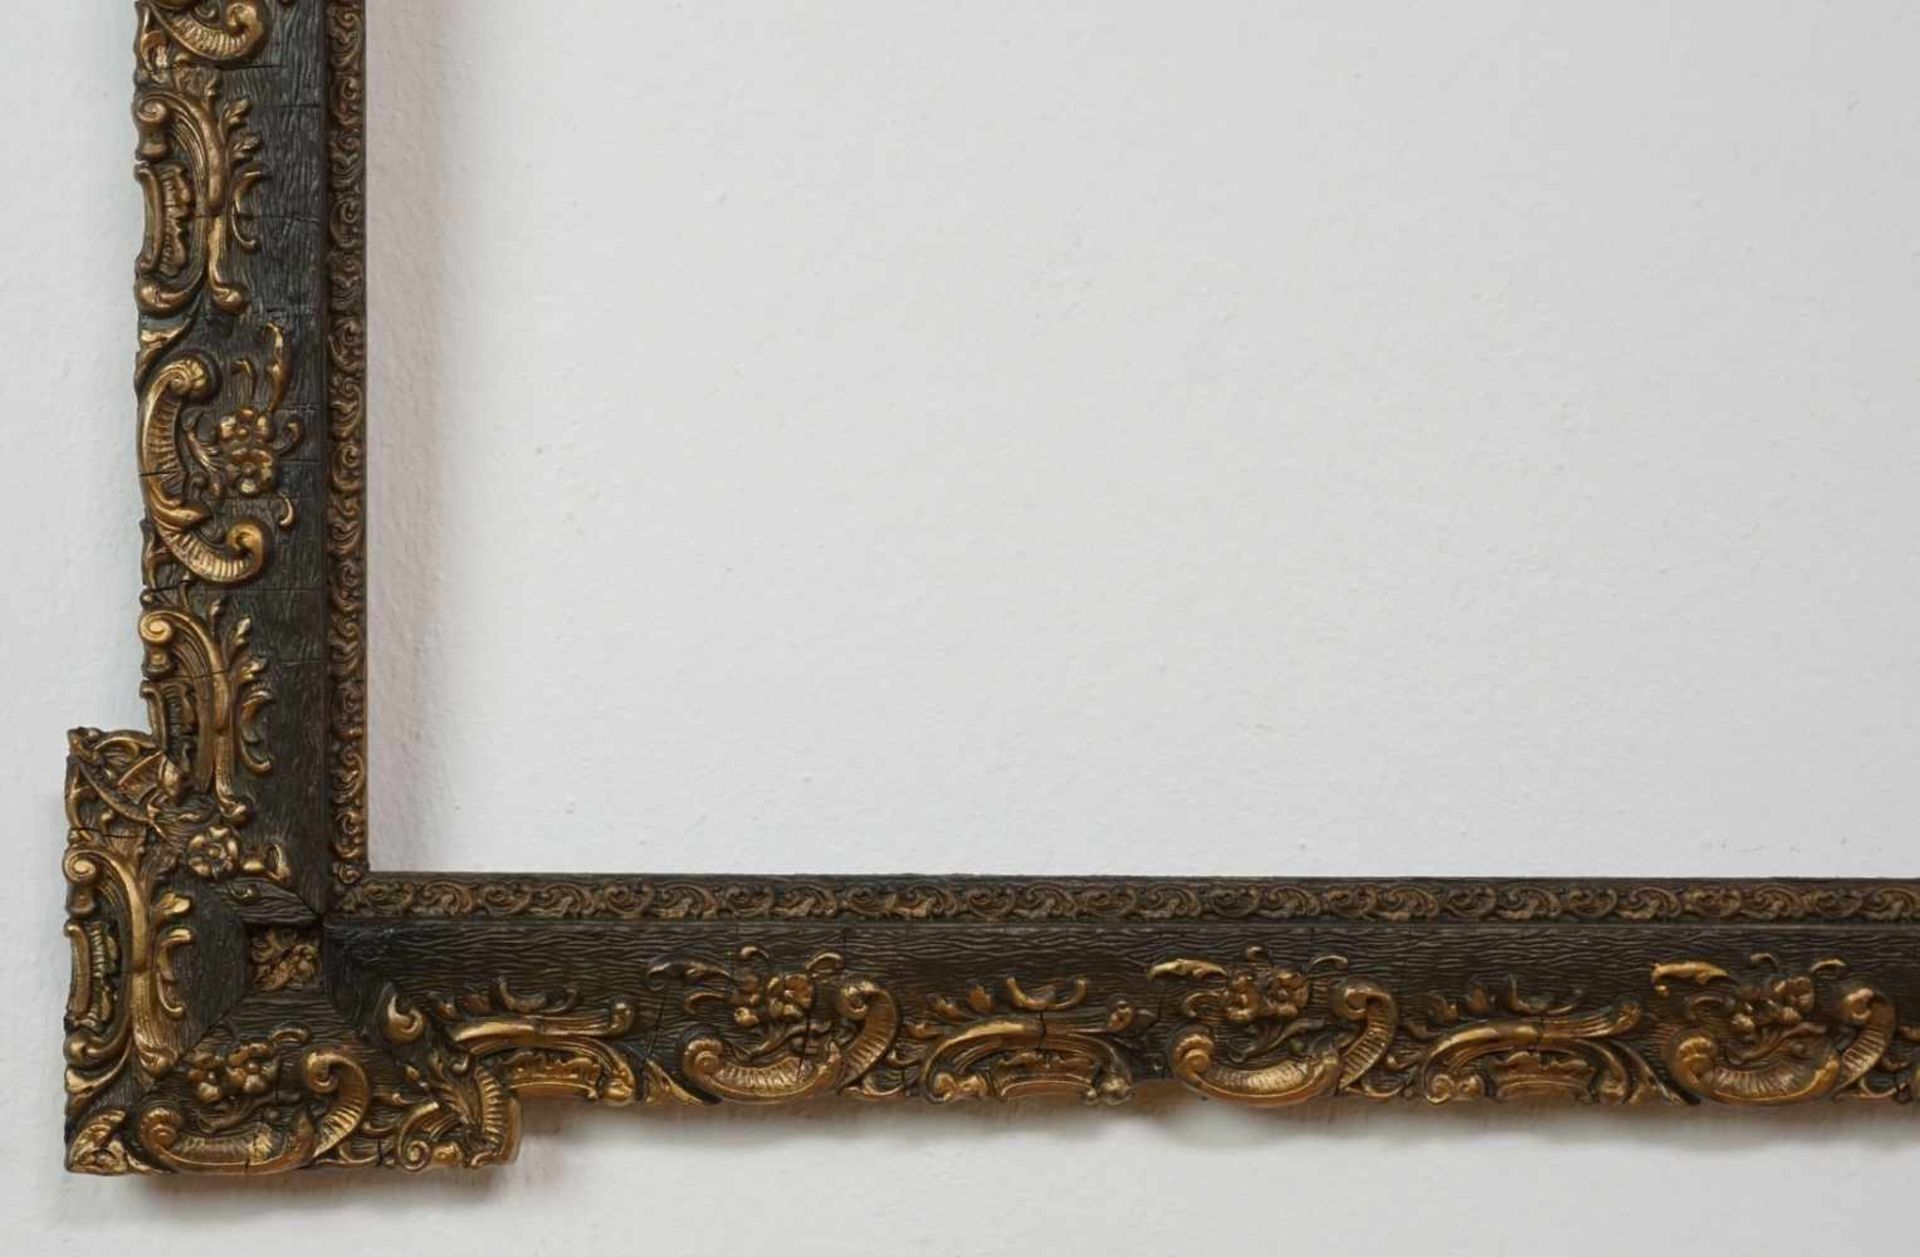 Drei Prunkrahmenaltersgemäß guter Zustand, dunkler Altgoldrahmen, Innenmaß 58 x 47 cm, - Bild 3 aus 4